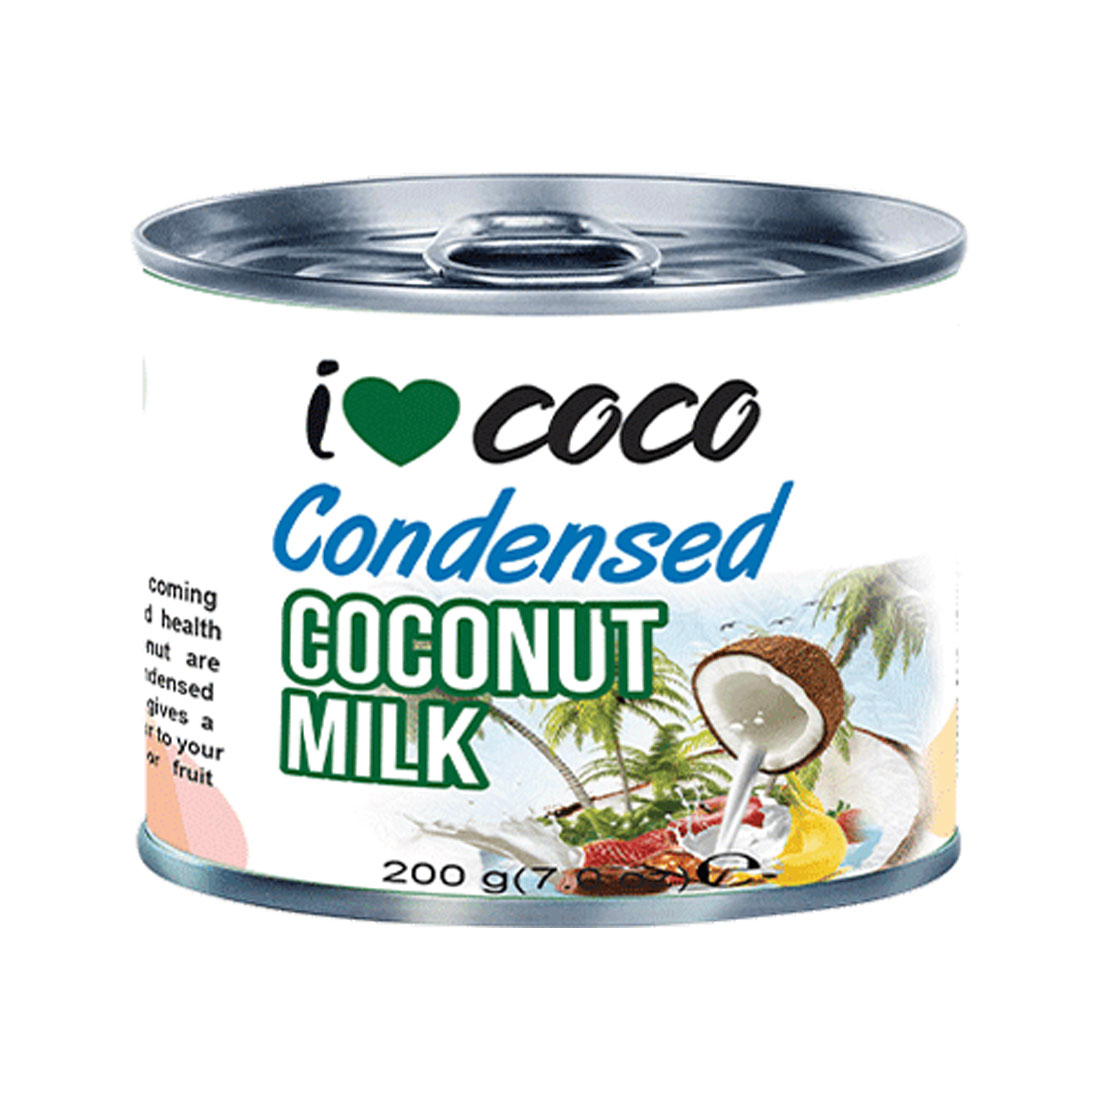 I Love Coco - Condensed Coconut Milk